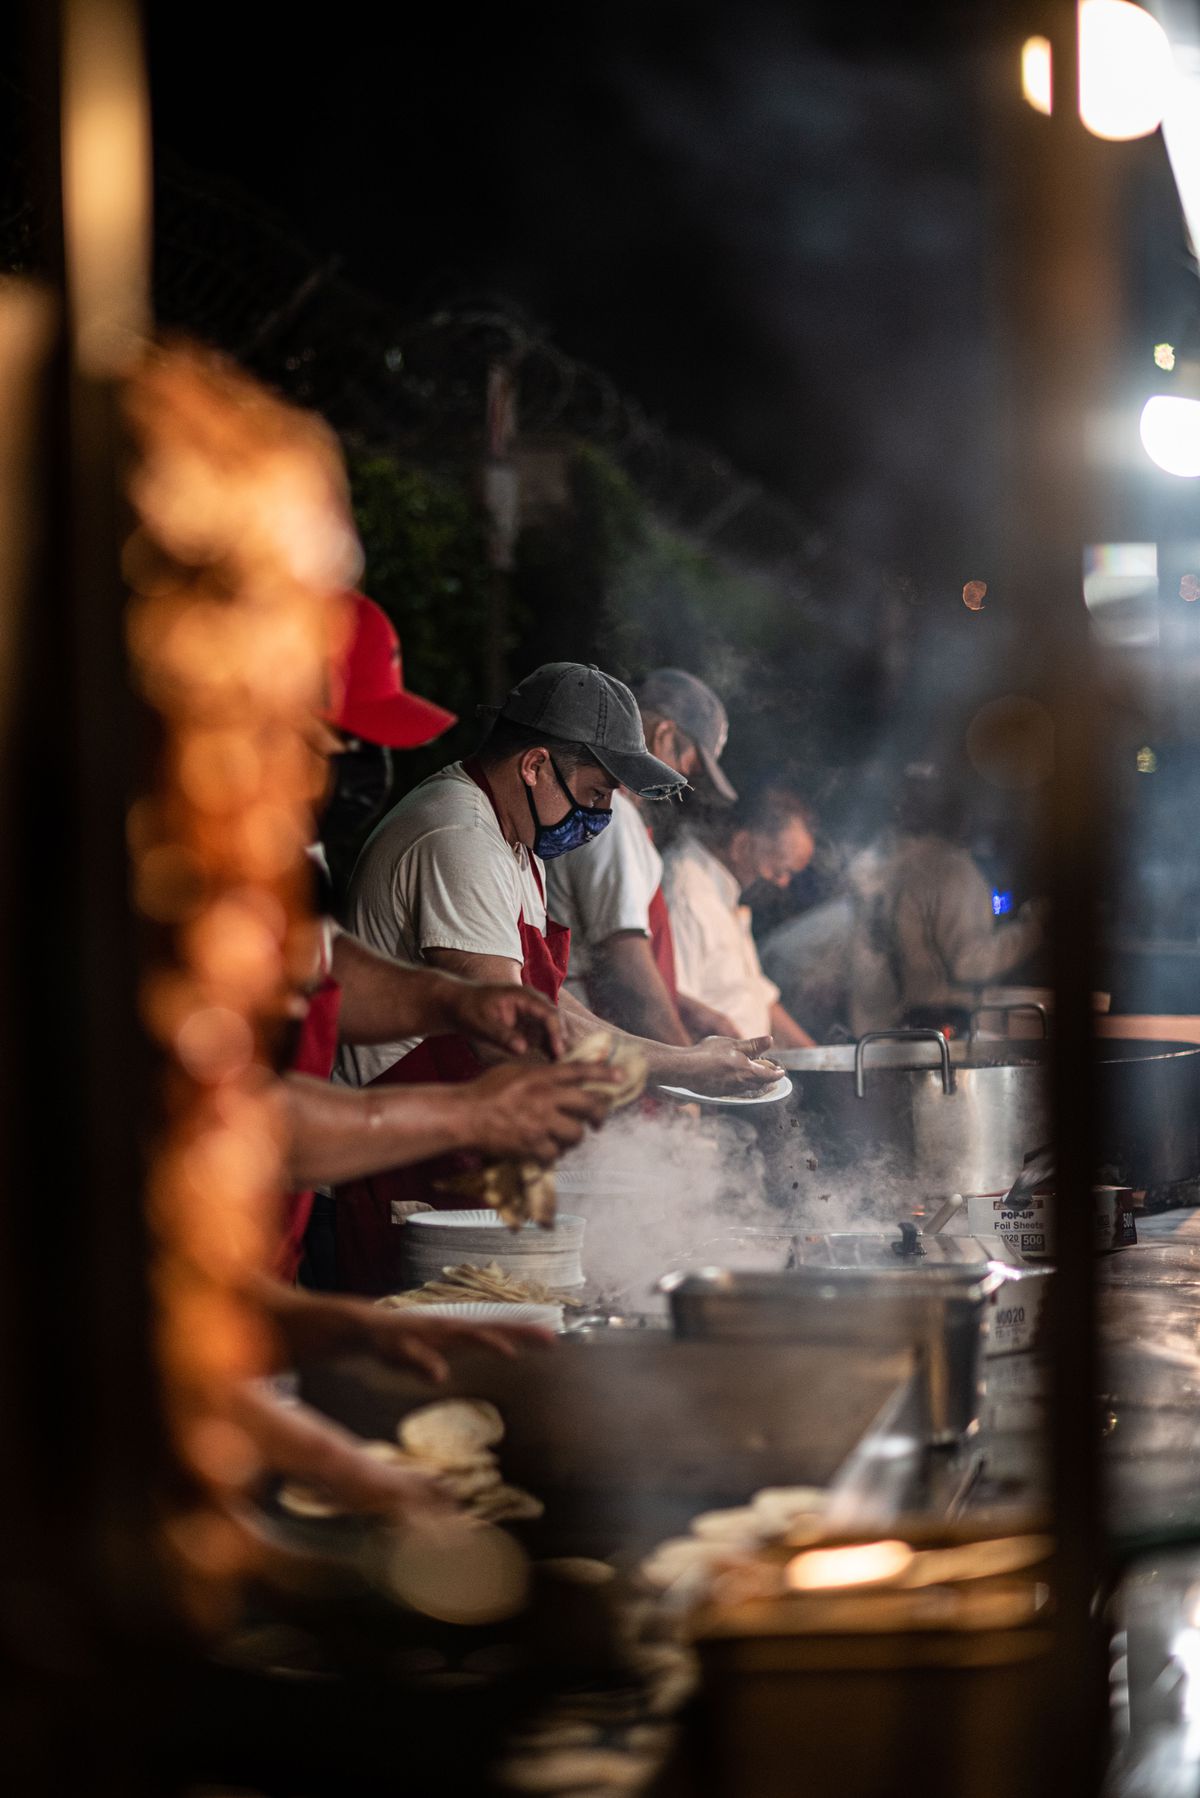 Taco street vendors preparing more tortillas.